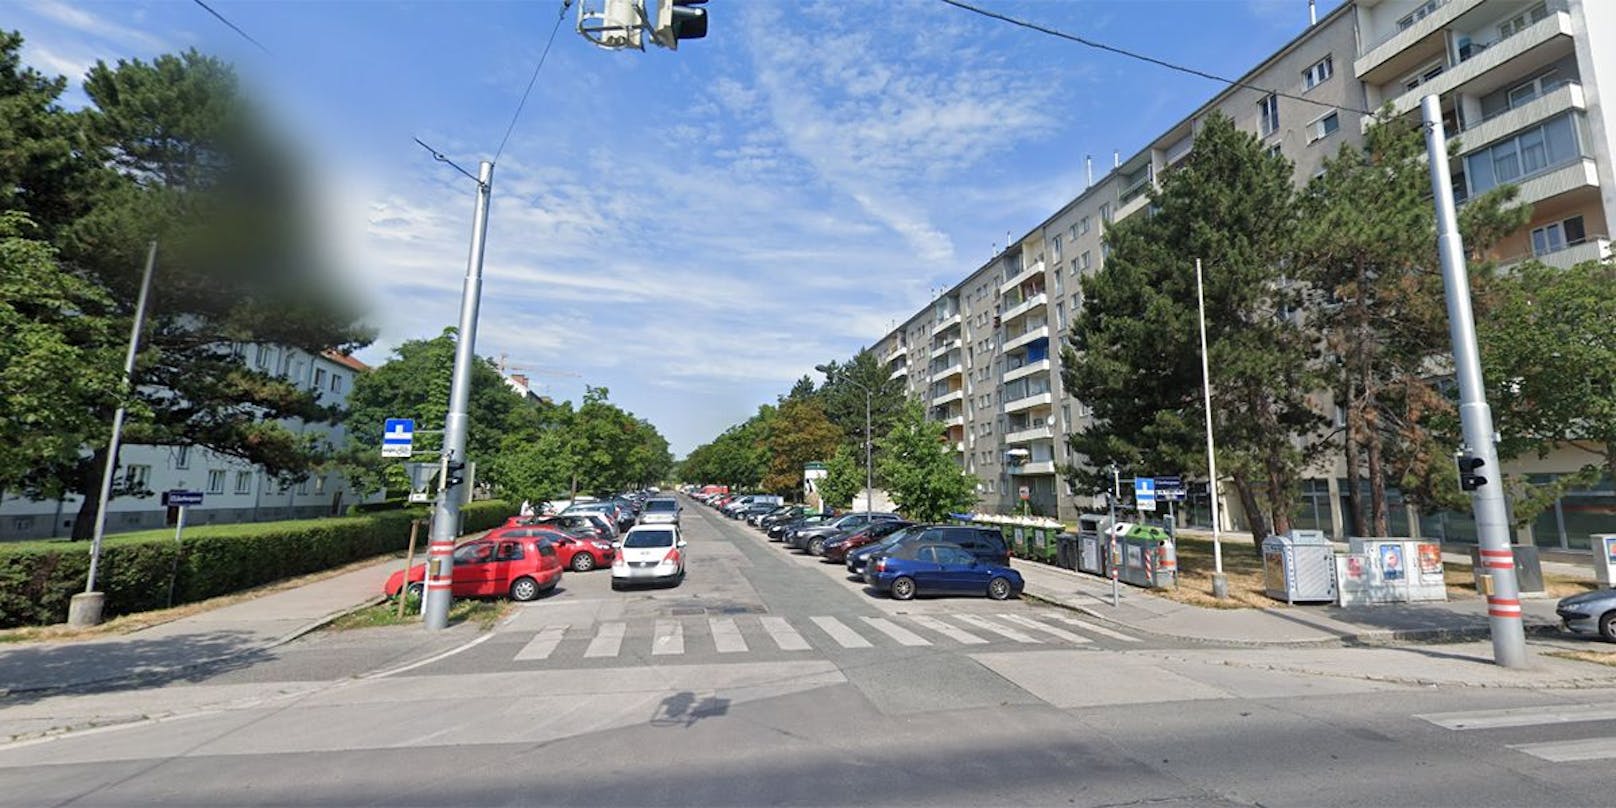 Im Streit um einen Parkplatz stach ein 41-Jähriger in der Wiener Gerbergasse zu.